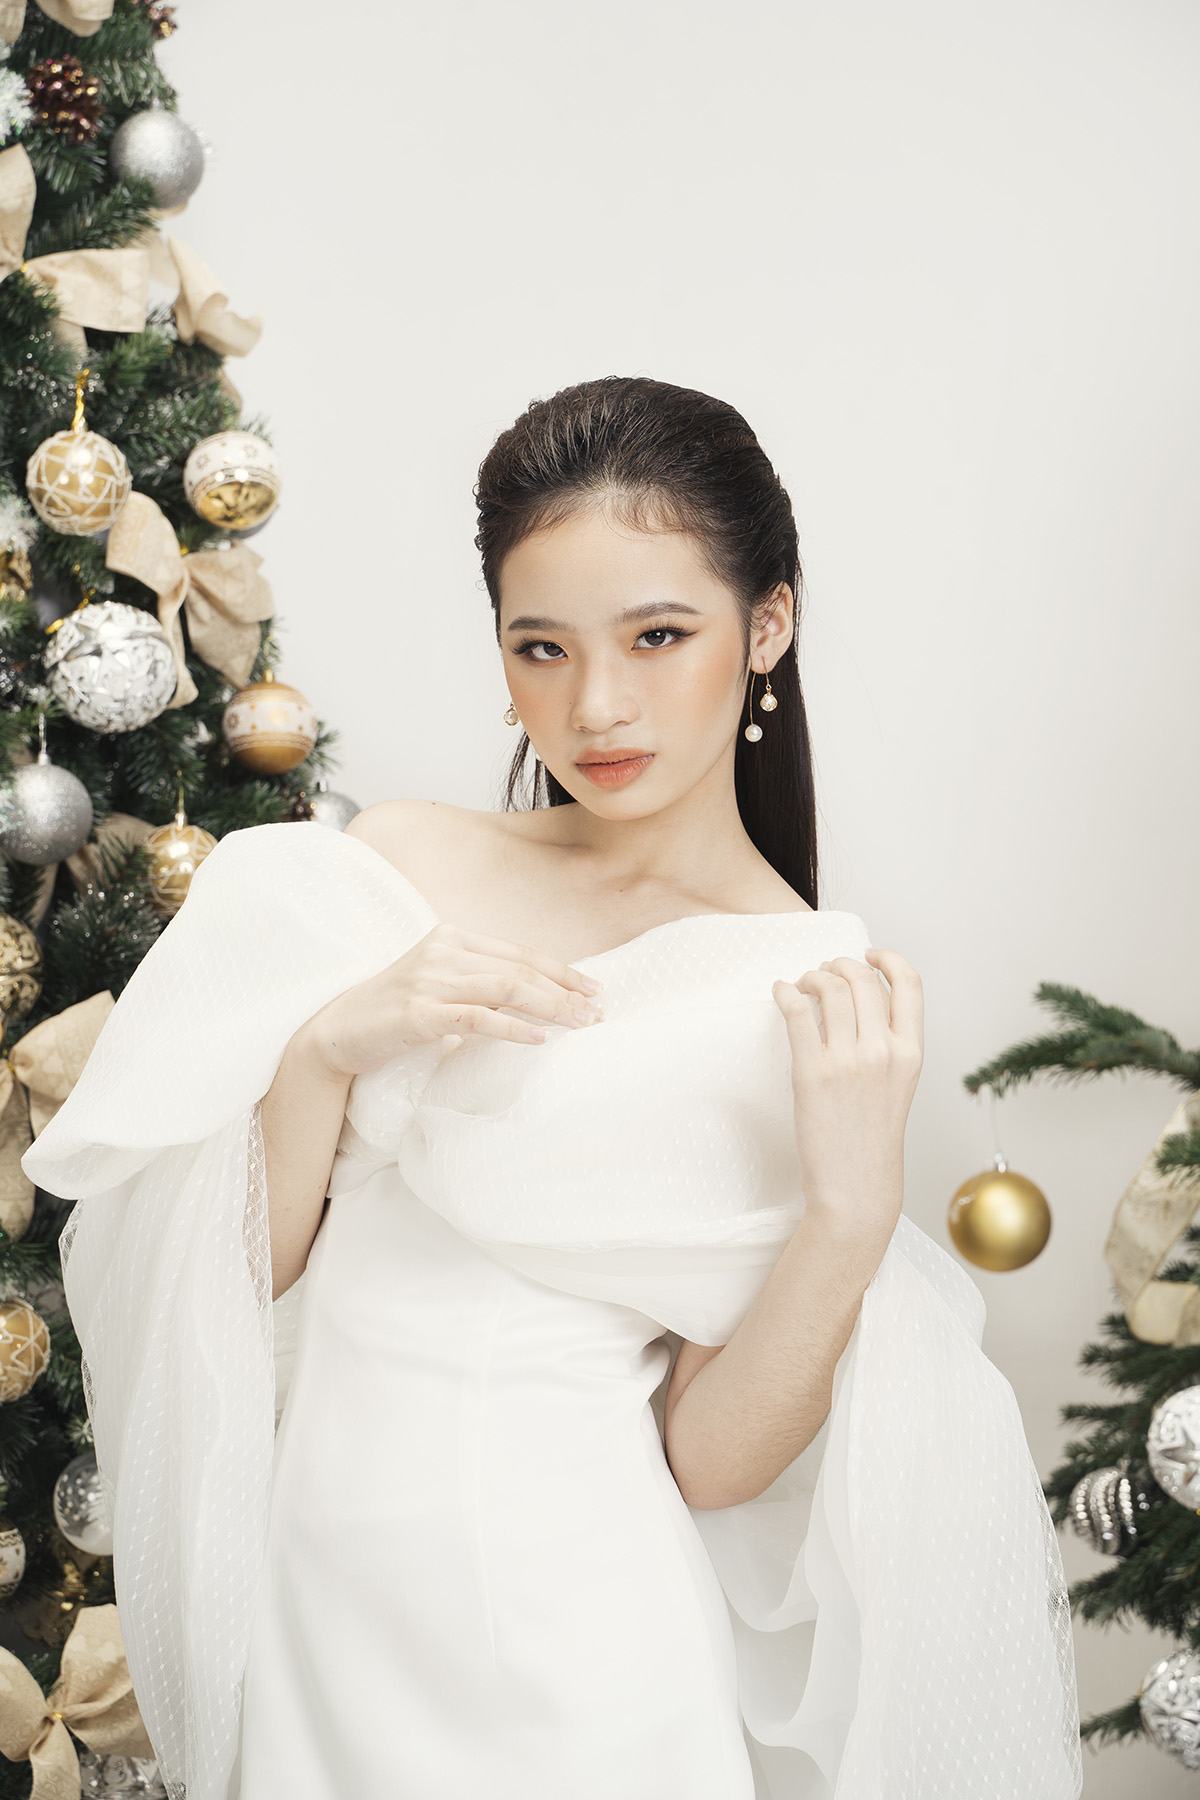 Mẫu nhí Bảo Hà sánh vai cùng chị đại Thanh Hằng trong trang phục Giáng sinh được thiết kế riêng của NTK Công Trí - ảnh 2